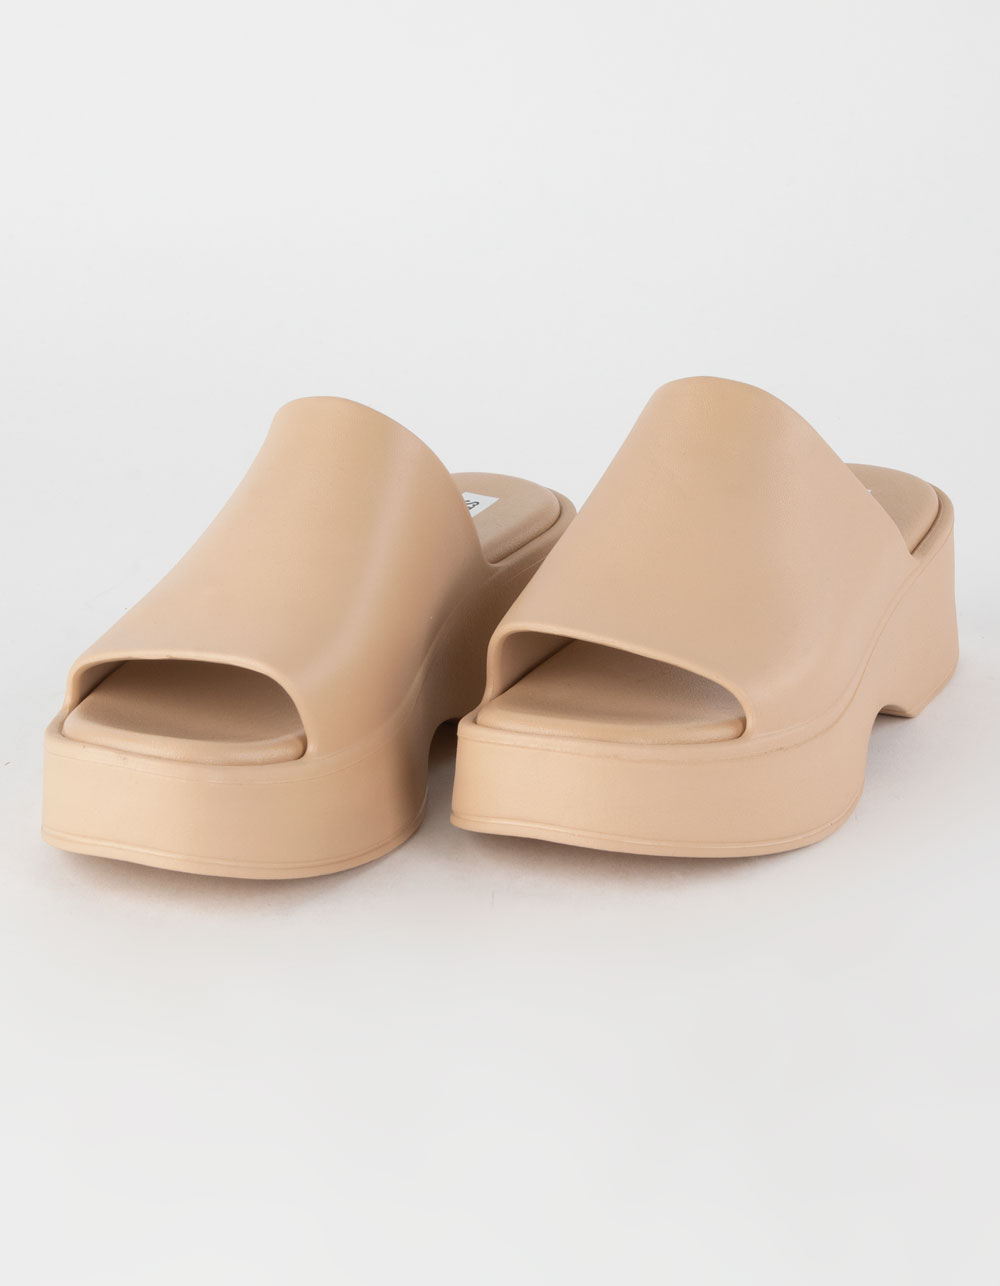 Steve Madden Women's Slinky-J Platform Sandals